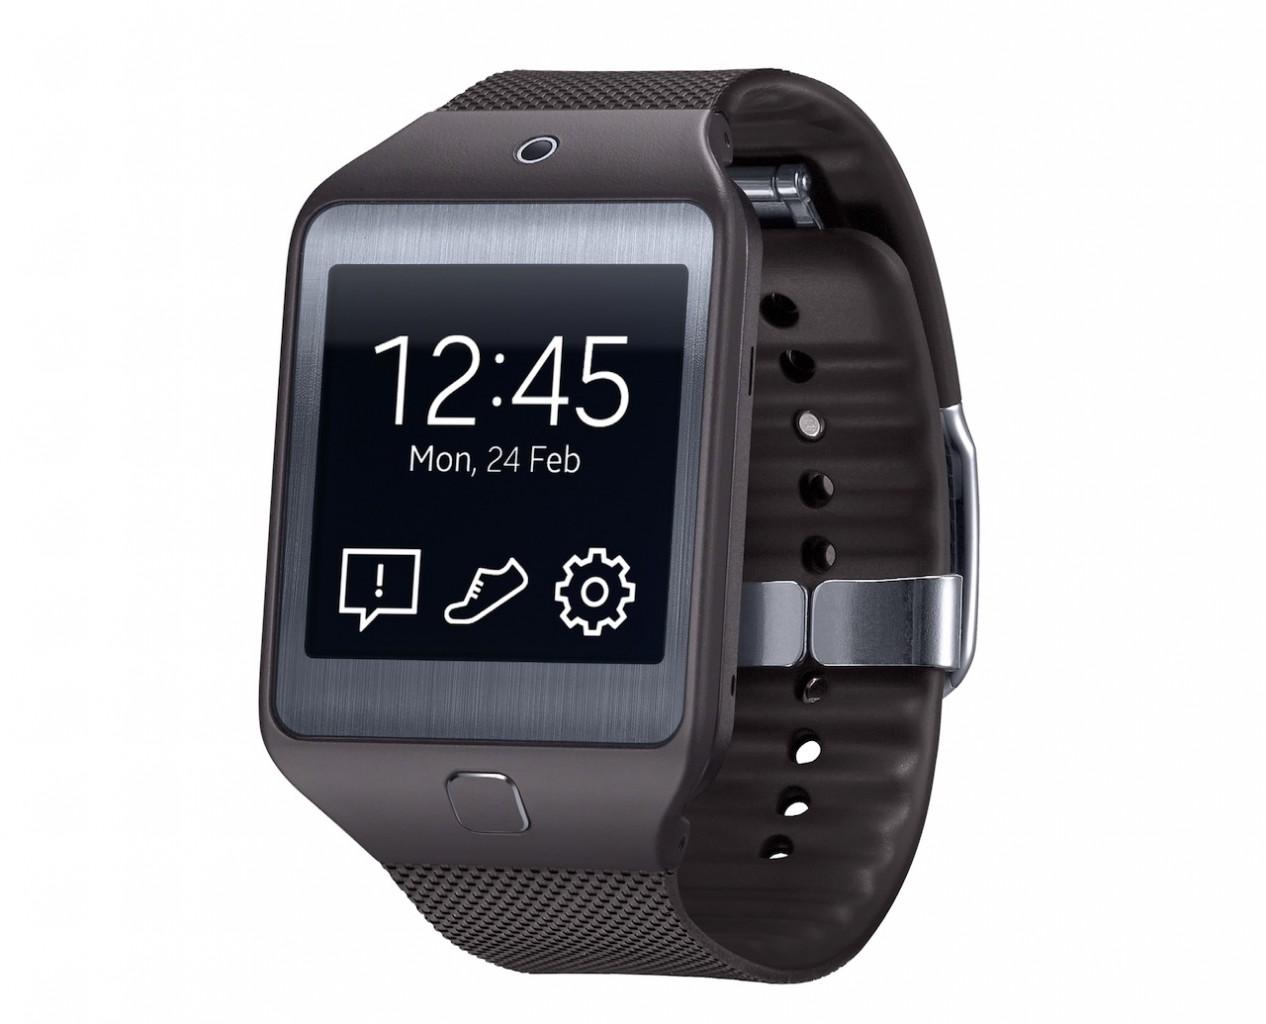 Verdienen Agrarisch cap Samsung Gear 2 and Gear 2 Neo smartwatches official - SlashGear